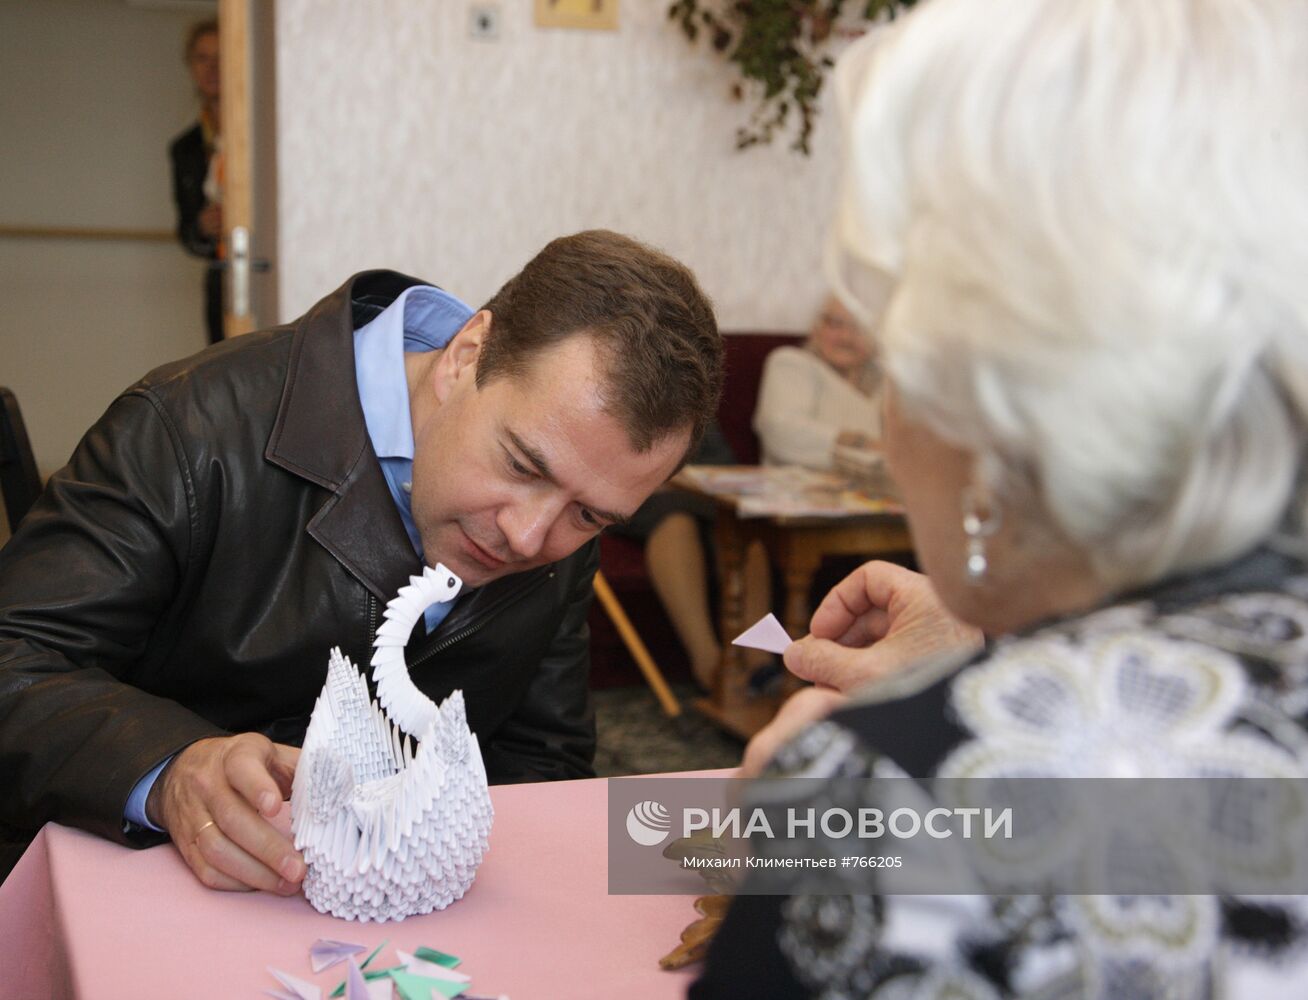 Рабочая поездка Дмитрия Медведева в ЦФО